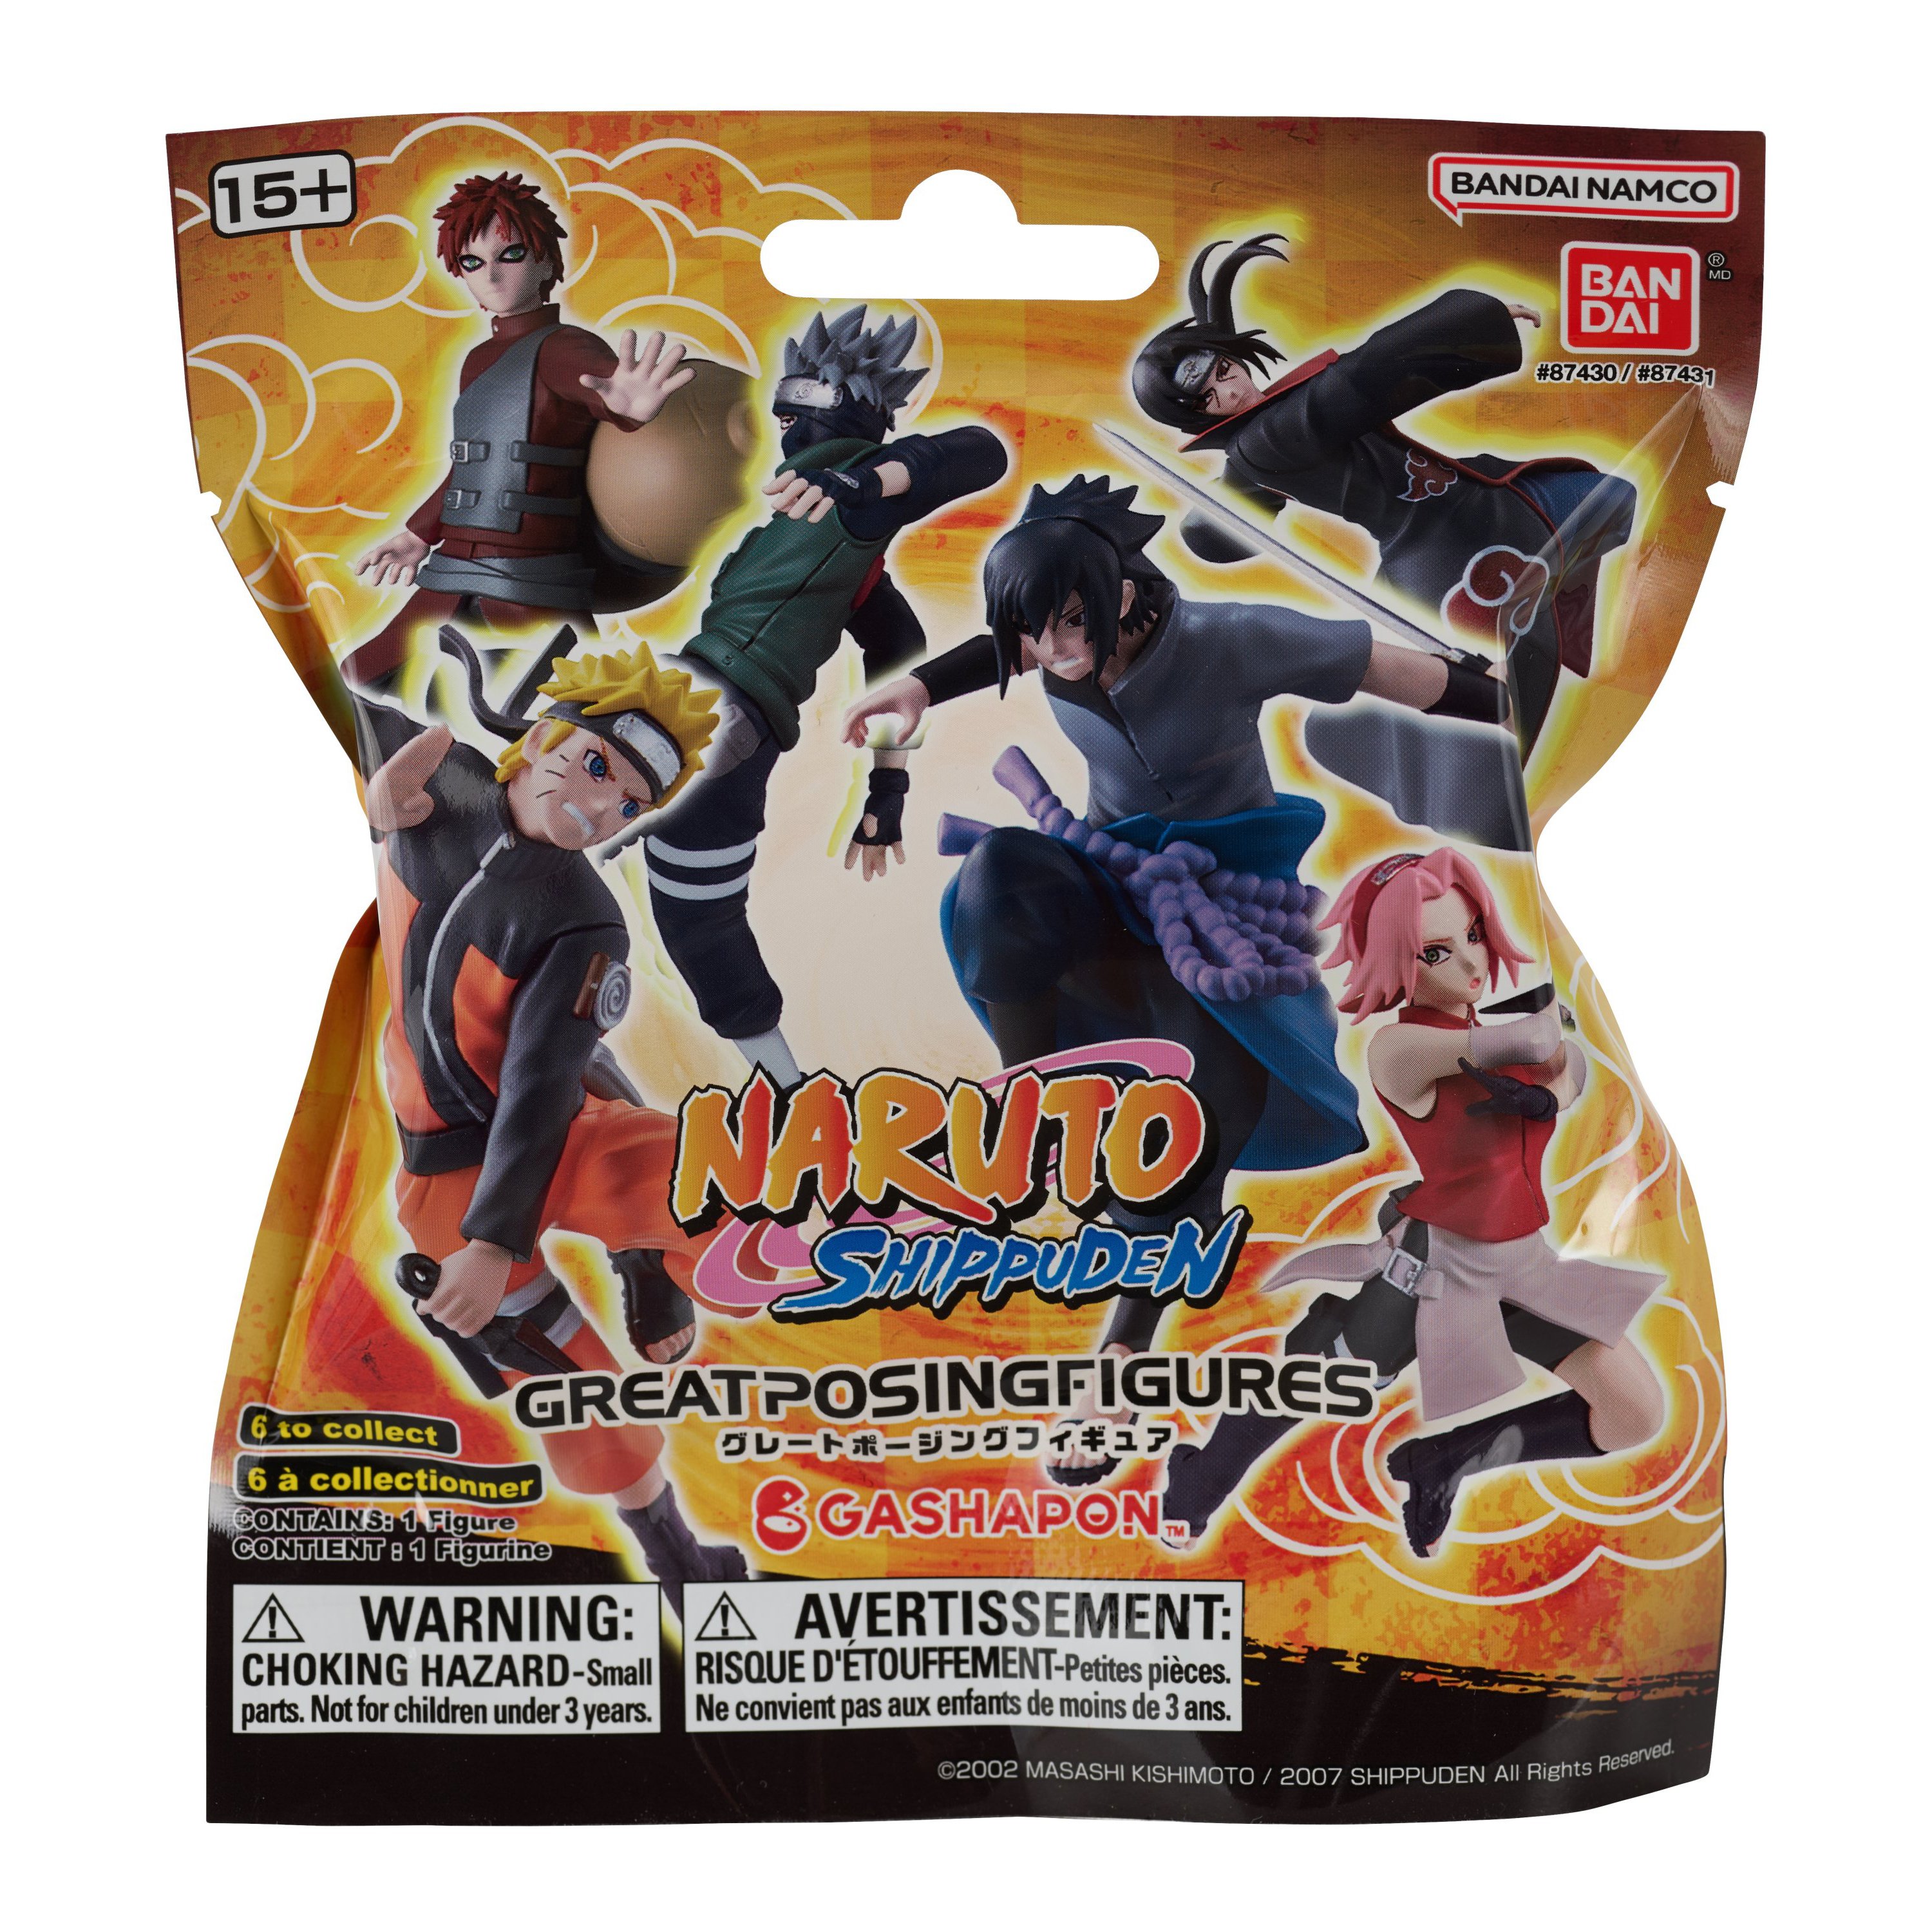 Naruto Anime Heroes Beyond - Naruto Figure : Target